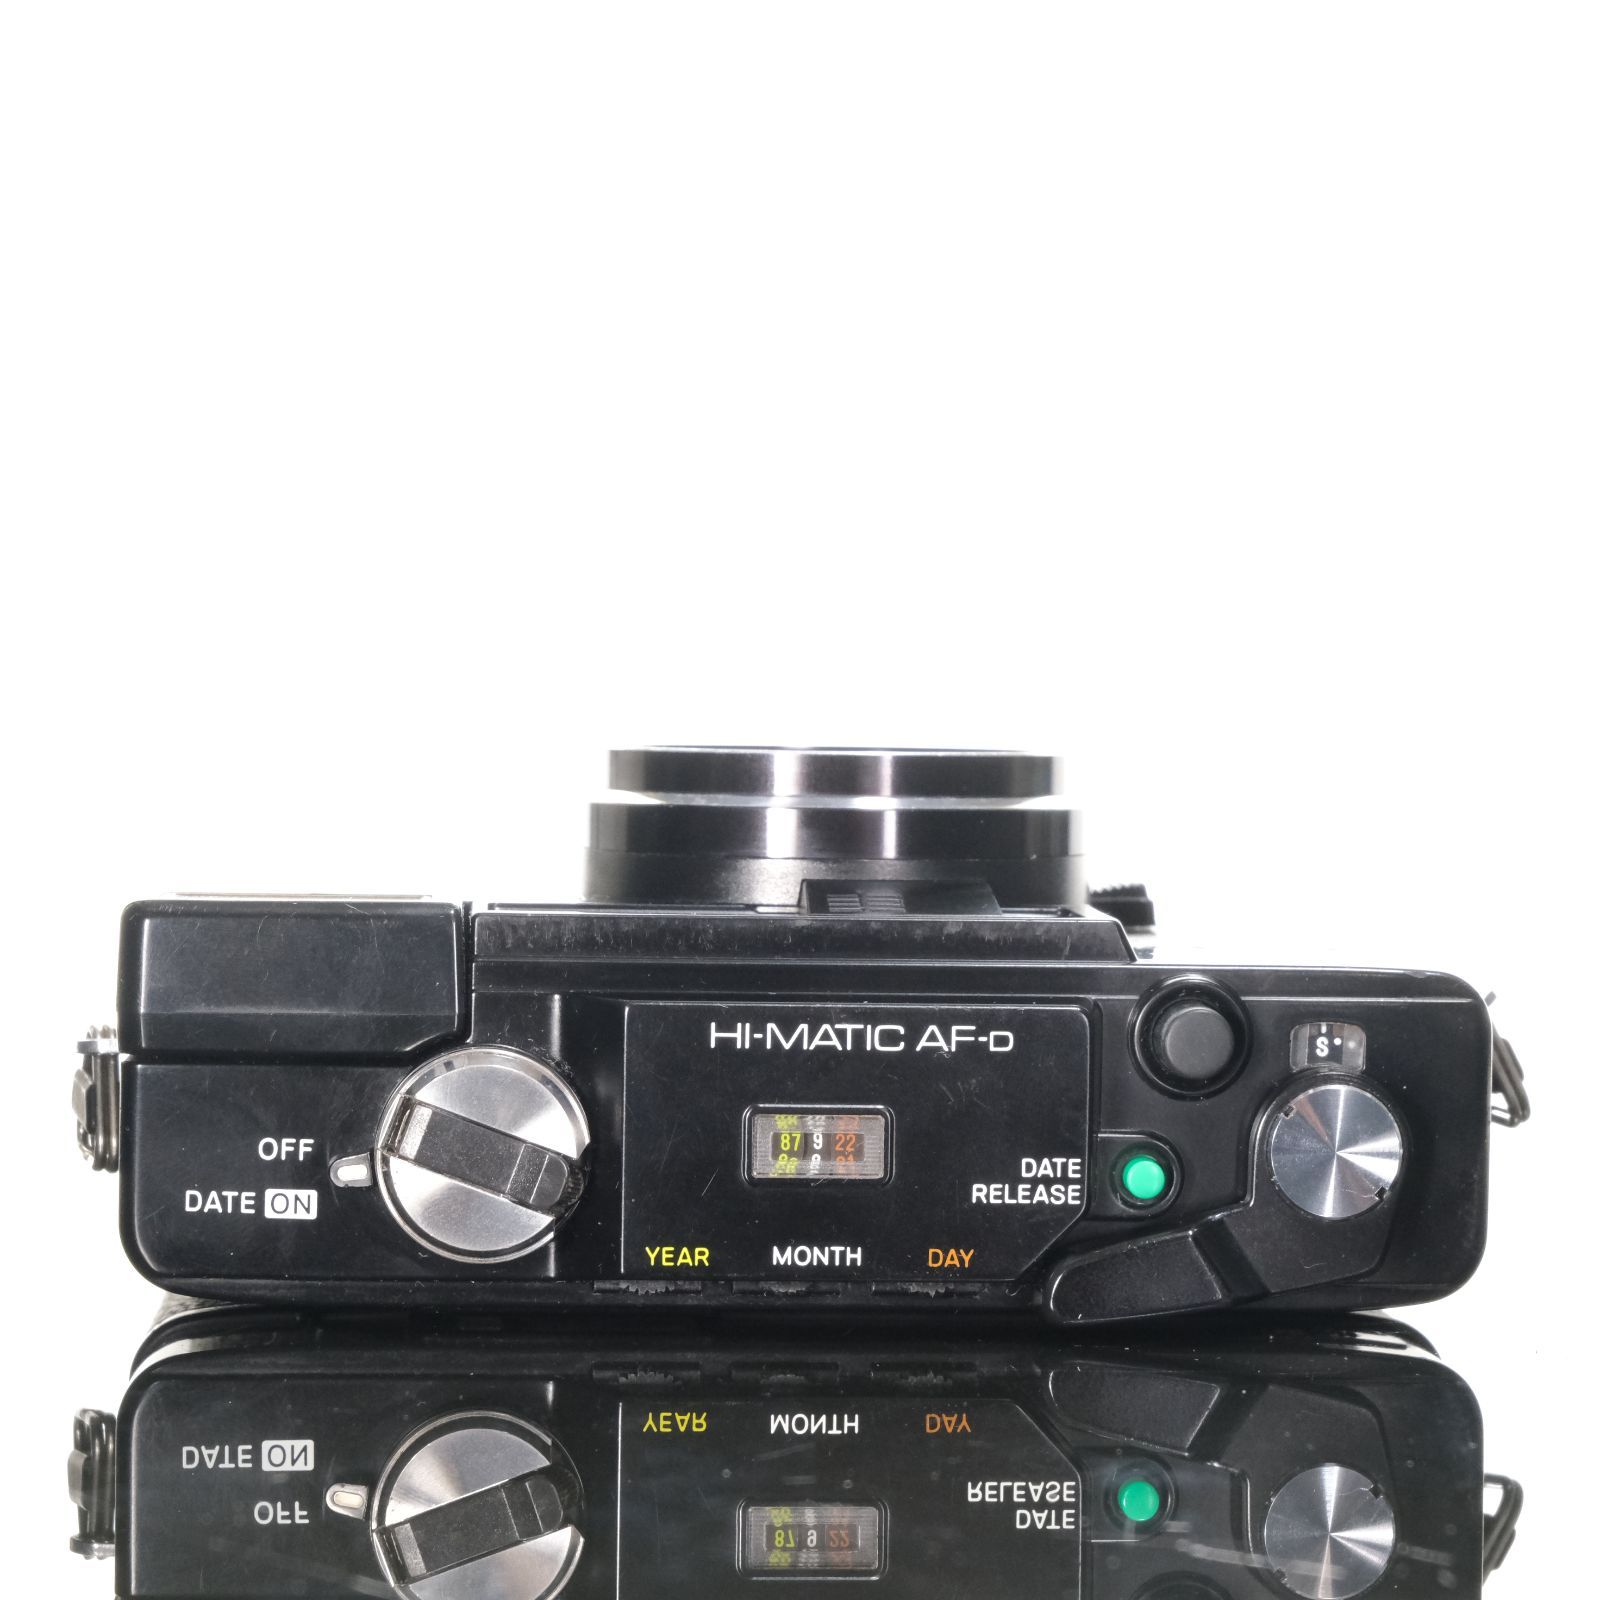 MINOLTA HI-MATIC AF-D 38mm F2.8【ランクC】 - まるやまカメラ - メルカリ